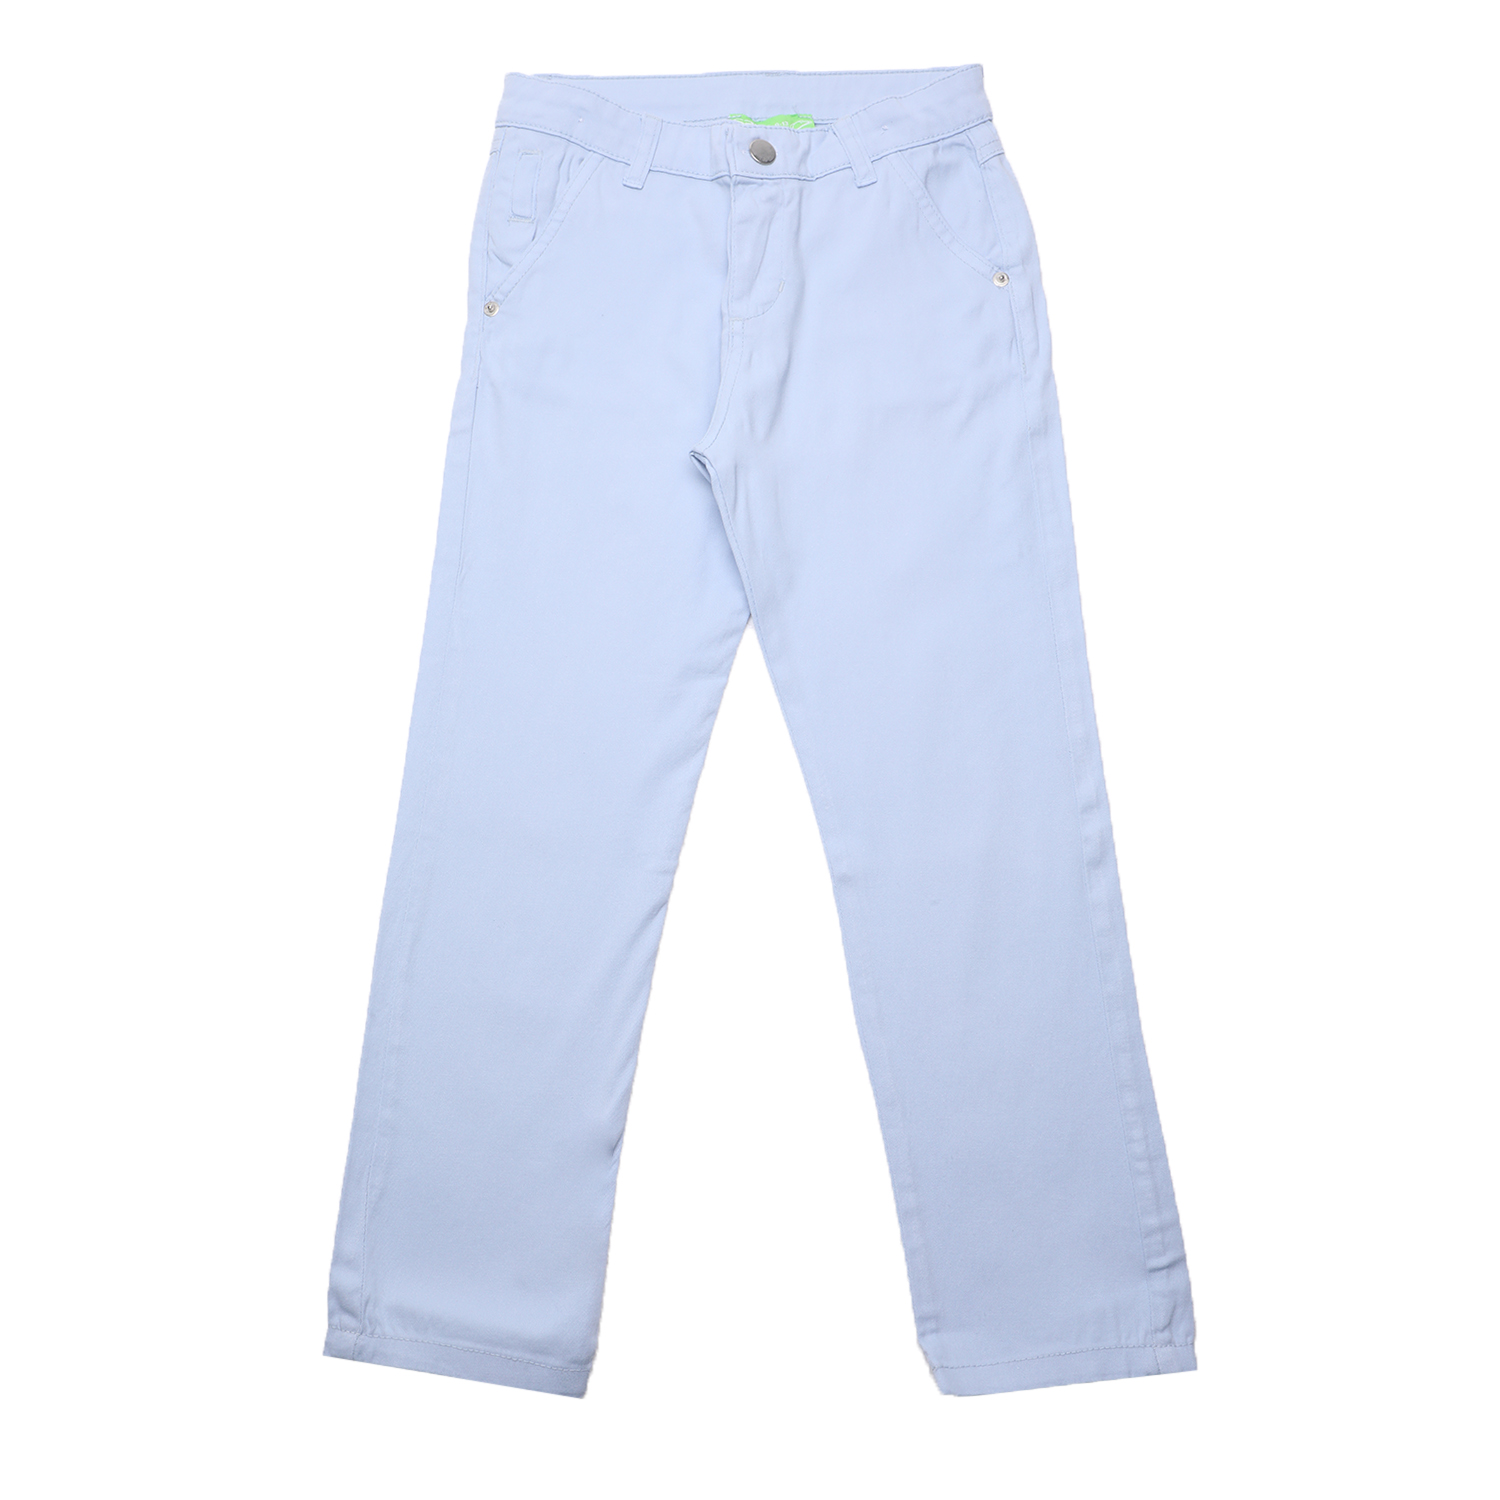 Παιδικά/Boys/Ρούχα/Παντελόνια SAM 0-13 - Παιδικό chino παντελόνι SAM 0-13 γαλάζιο